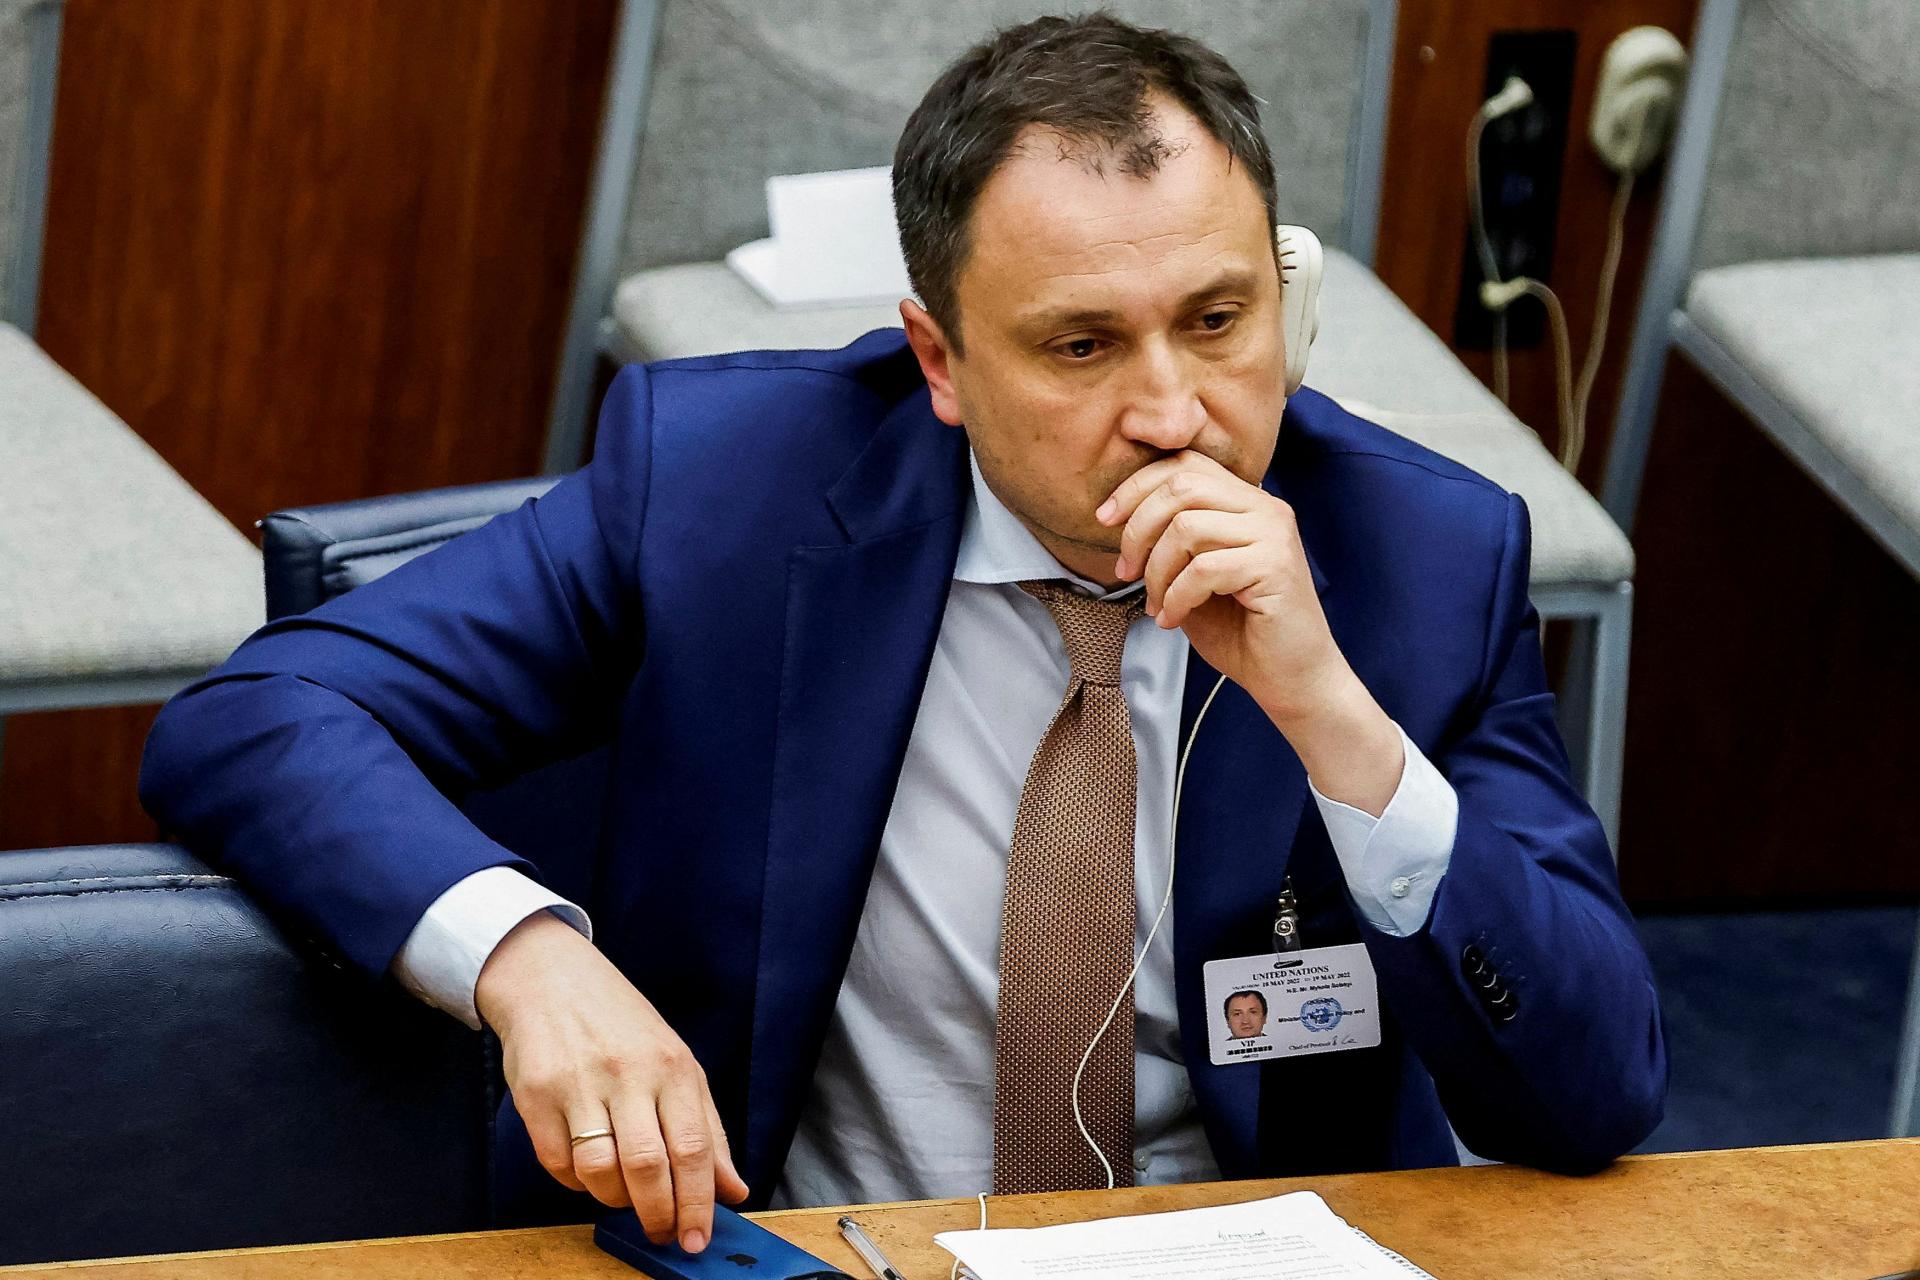 Ukrajinský minister poľnohospodárstva, ktorý je podozrivý z korupcie, oficiálne rezignoval